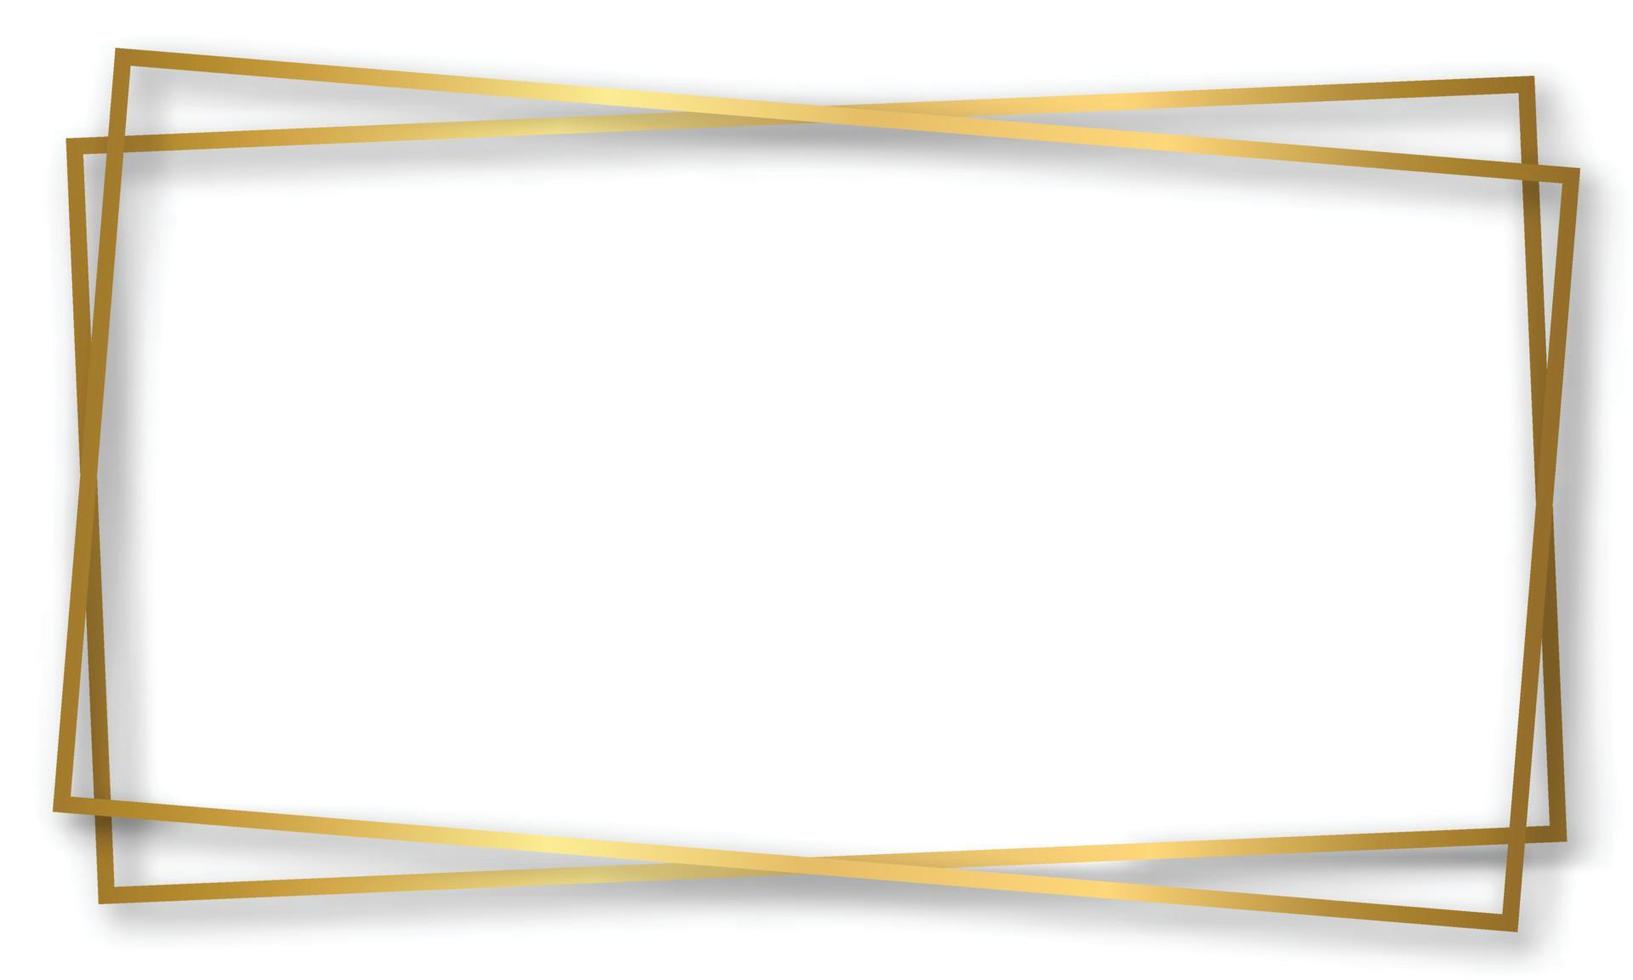 goud glanzend gloeiend vintage frame met schaduwen geïsoleerd transparante achtergrond. gouden luxe realistische rechthoekrand. vector illustratie